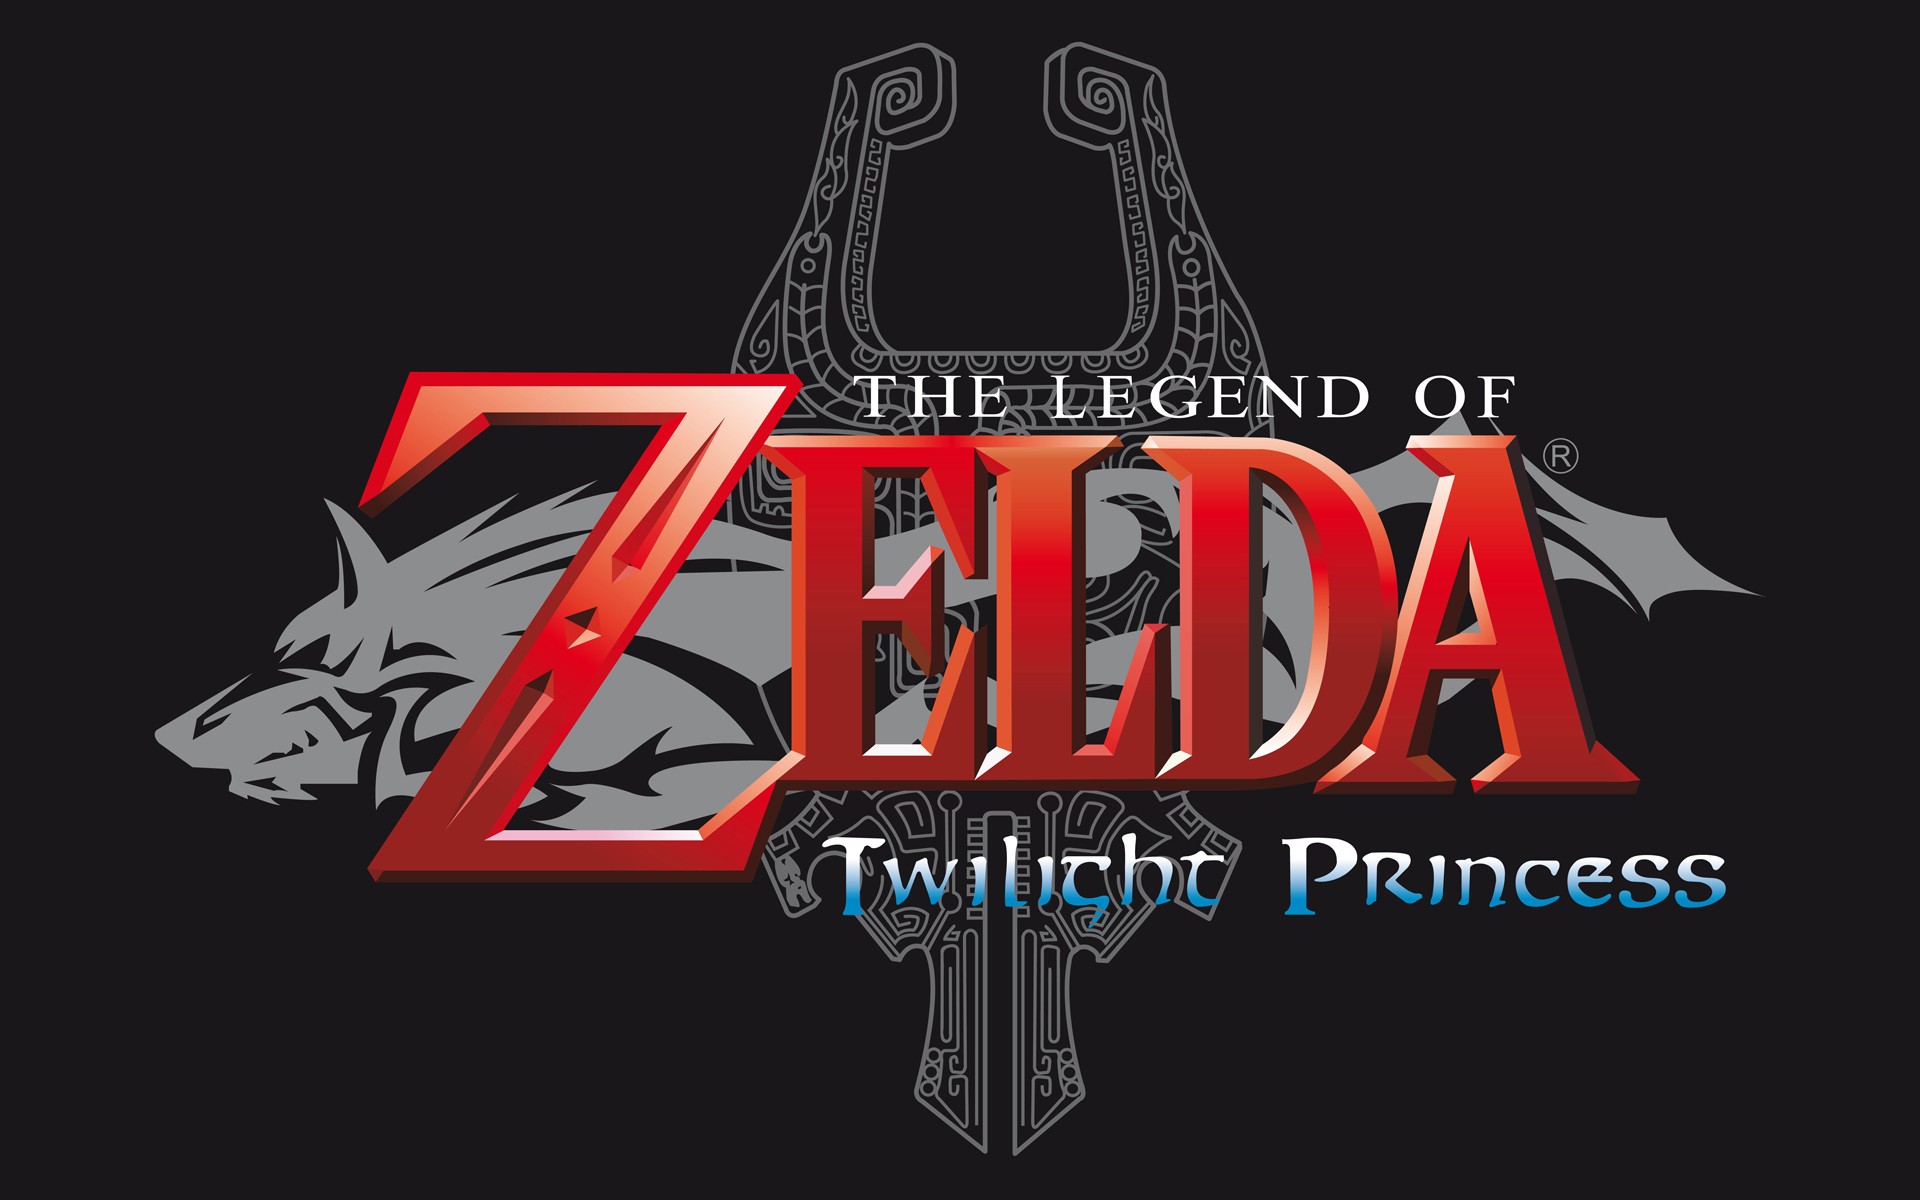 General 1920x1200 The Legend of Zelda The Legend of Zelda: Twilight Princess video games Wolf Link simple background black background Nintendo digital art